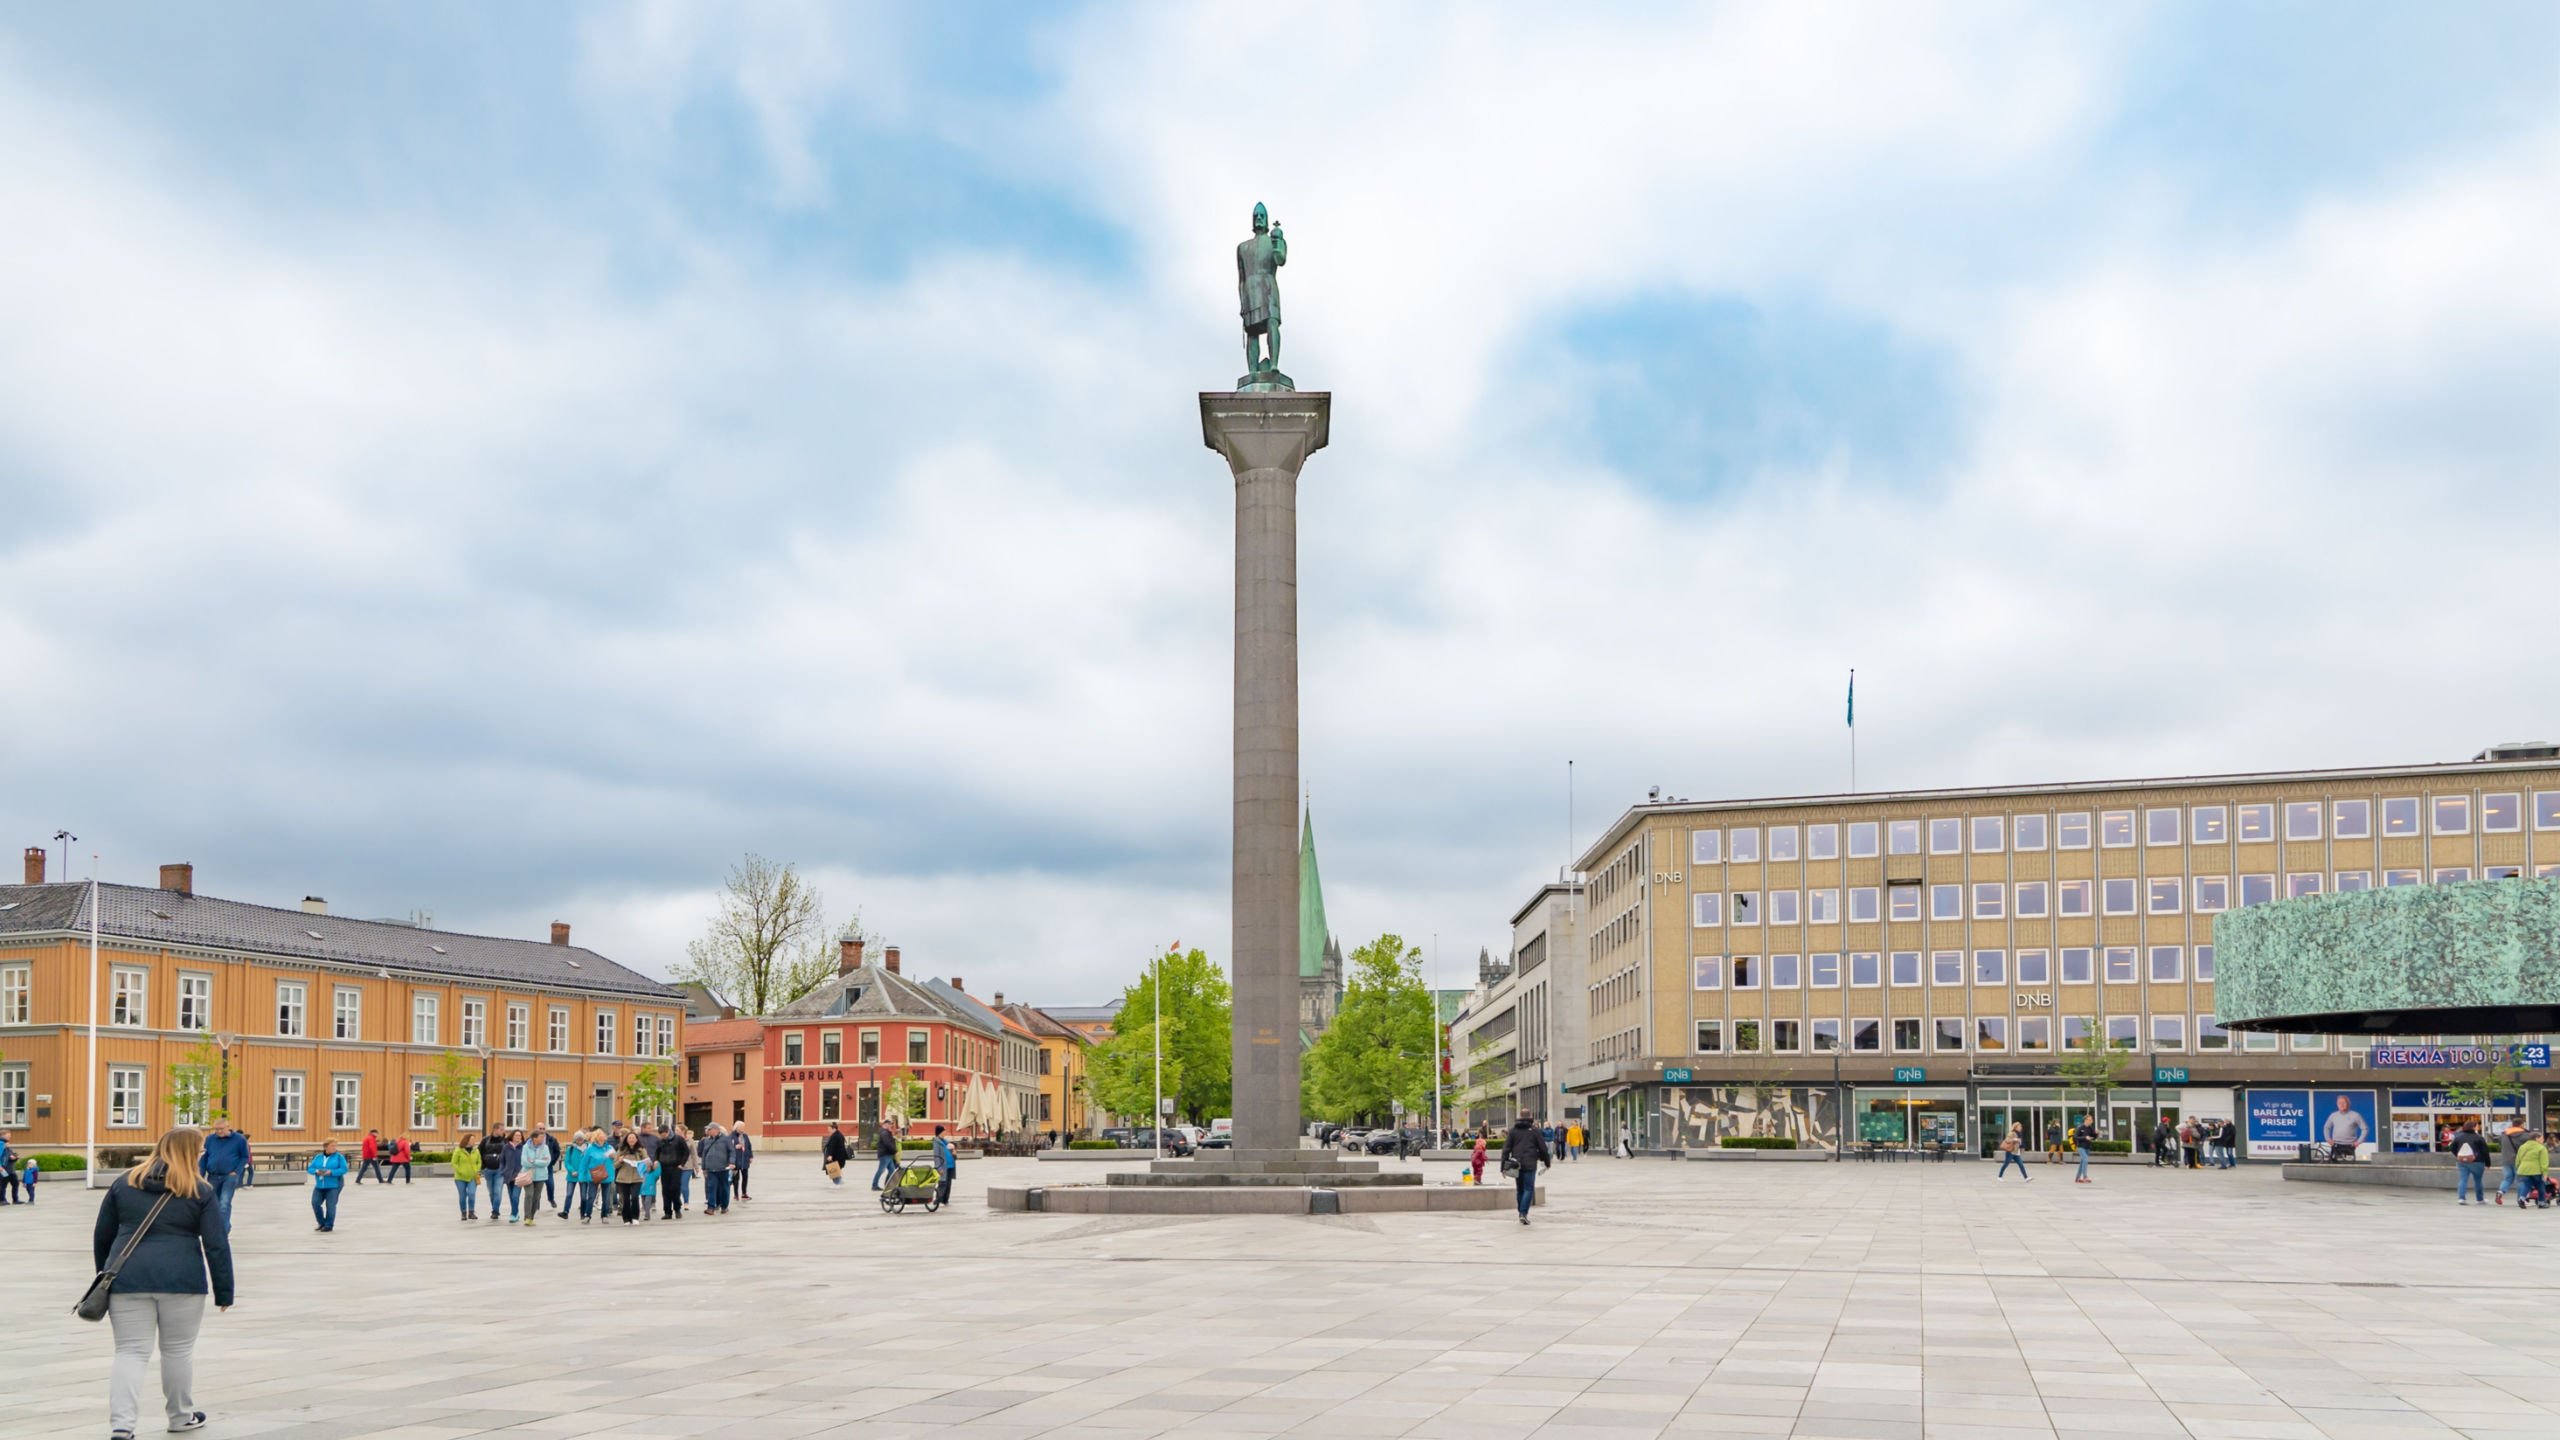 The Trondheim market square, Torvet. Photo: A. Kiro / Shutterstock.com